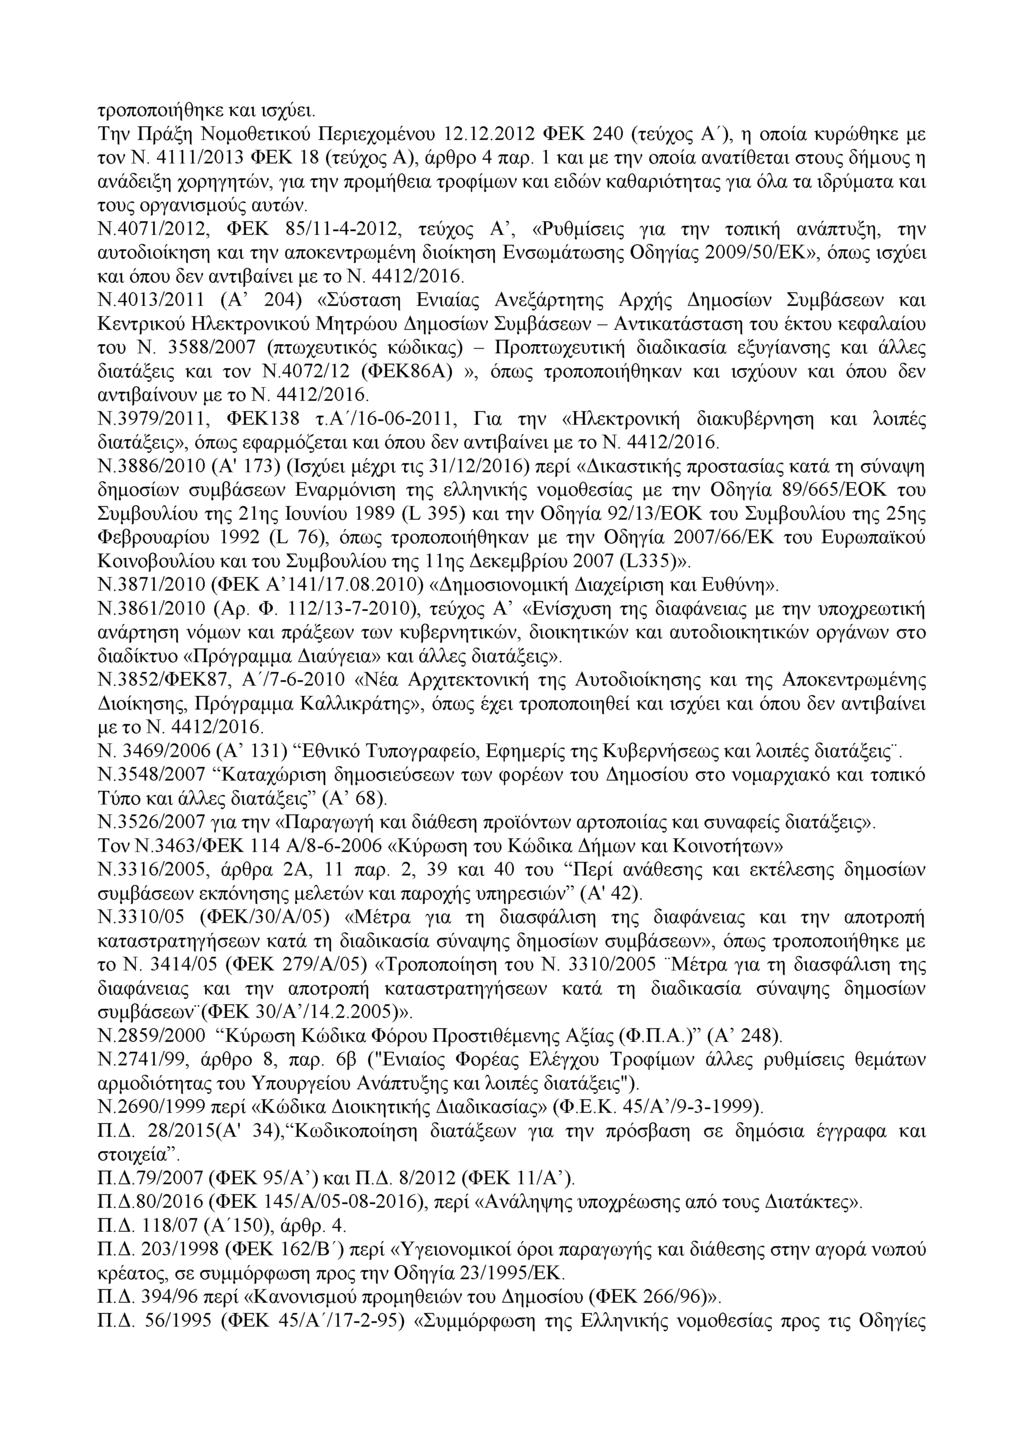 τροποποιήθηκε και ισχύει. Την Πράξη Νομοθετικού Περιεχομένου 12.12.2012 ΦΕΚ 240 (τεύχος Λ'), η οποία κυρώθηκε με τον Ν. 4111/2013 ΦΕΚ 18 (τεύχος Λ), άρθρο 4 παρ.